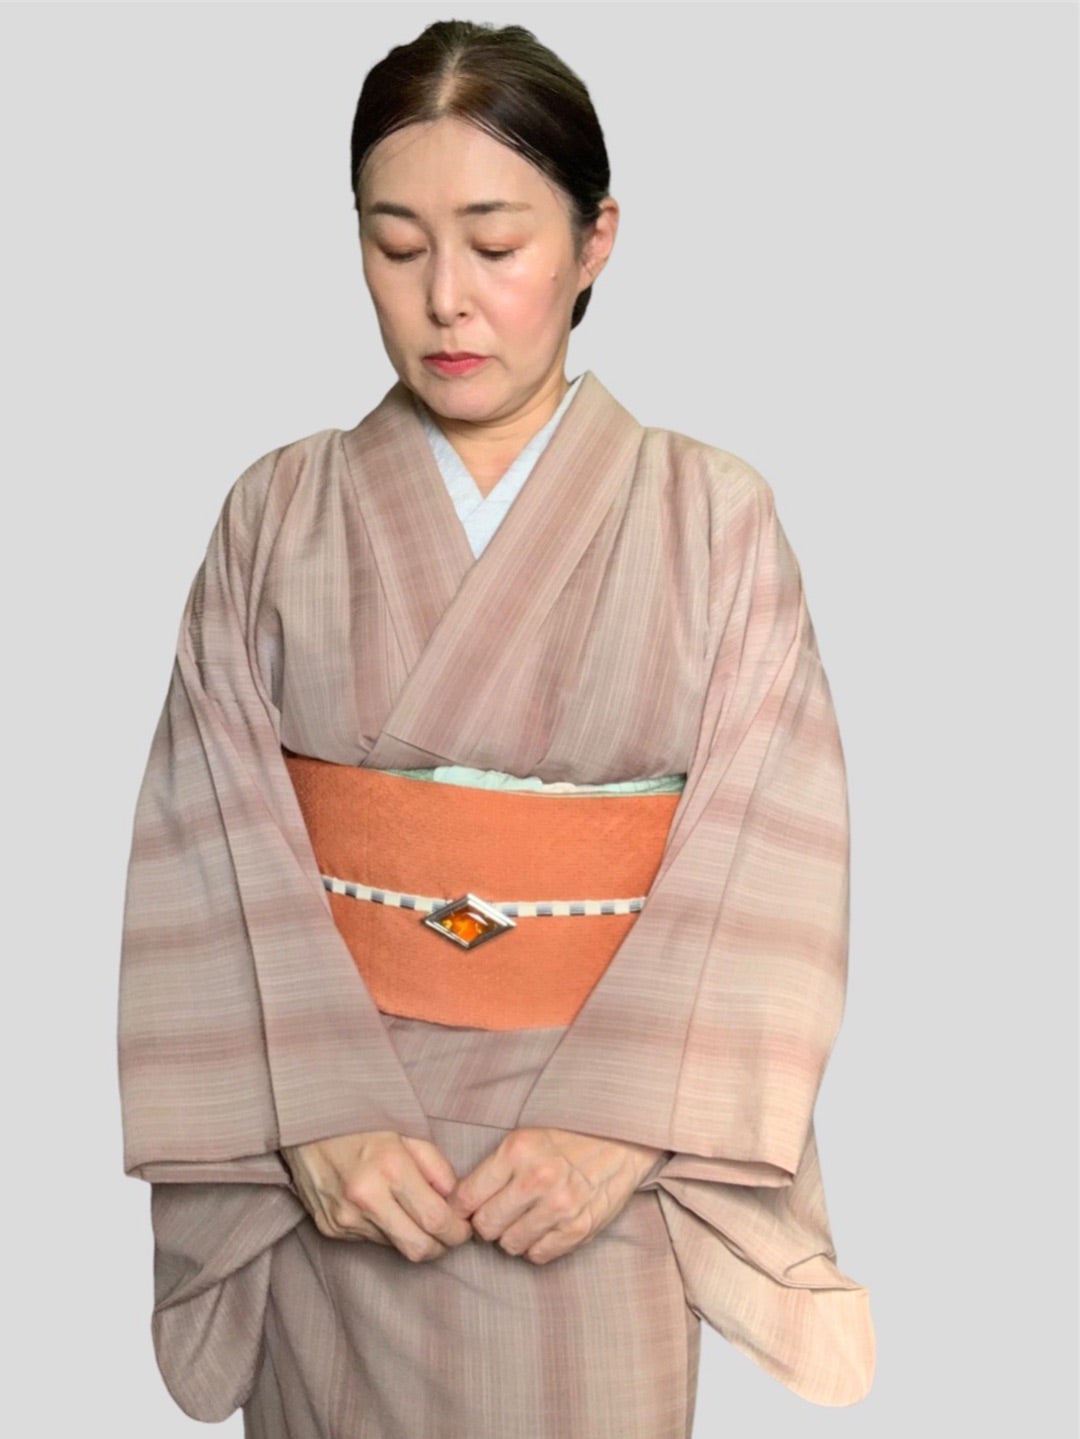 龍郷柄大島紬に合わせる帯 | 地元京都を着物で楽しむプチプラコーデ日記